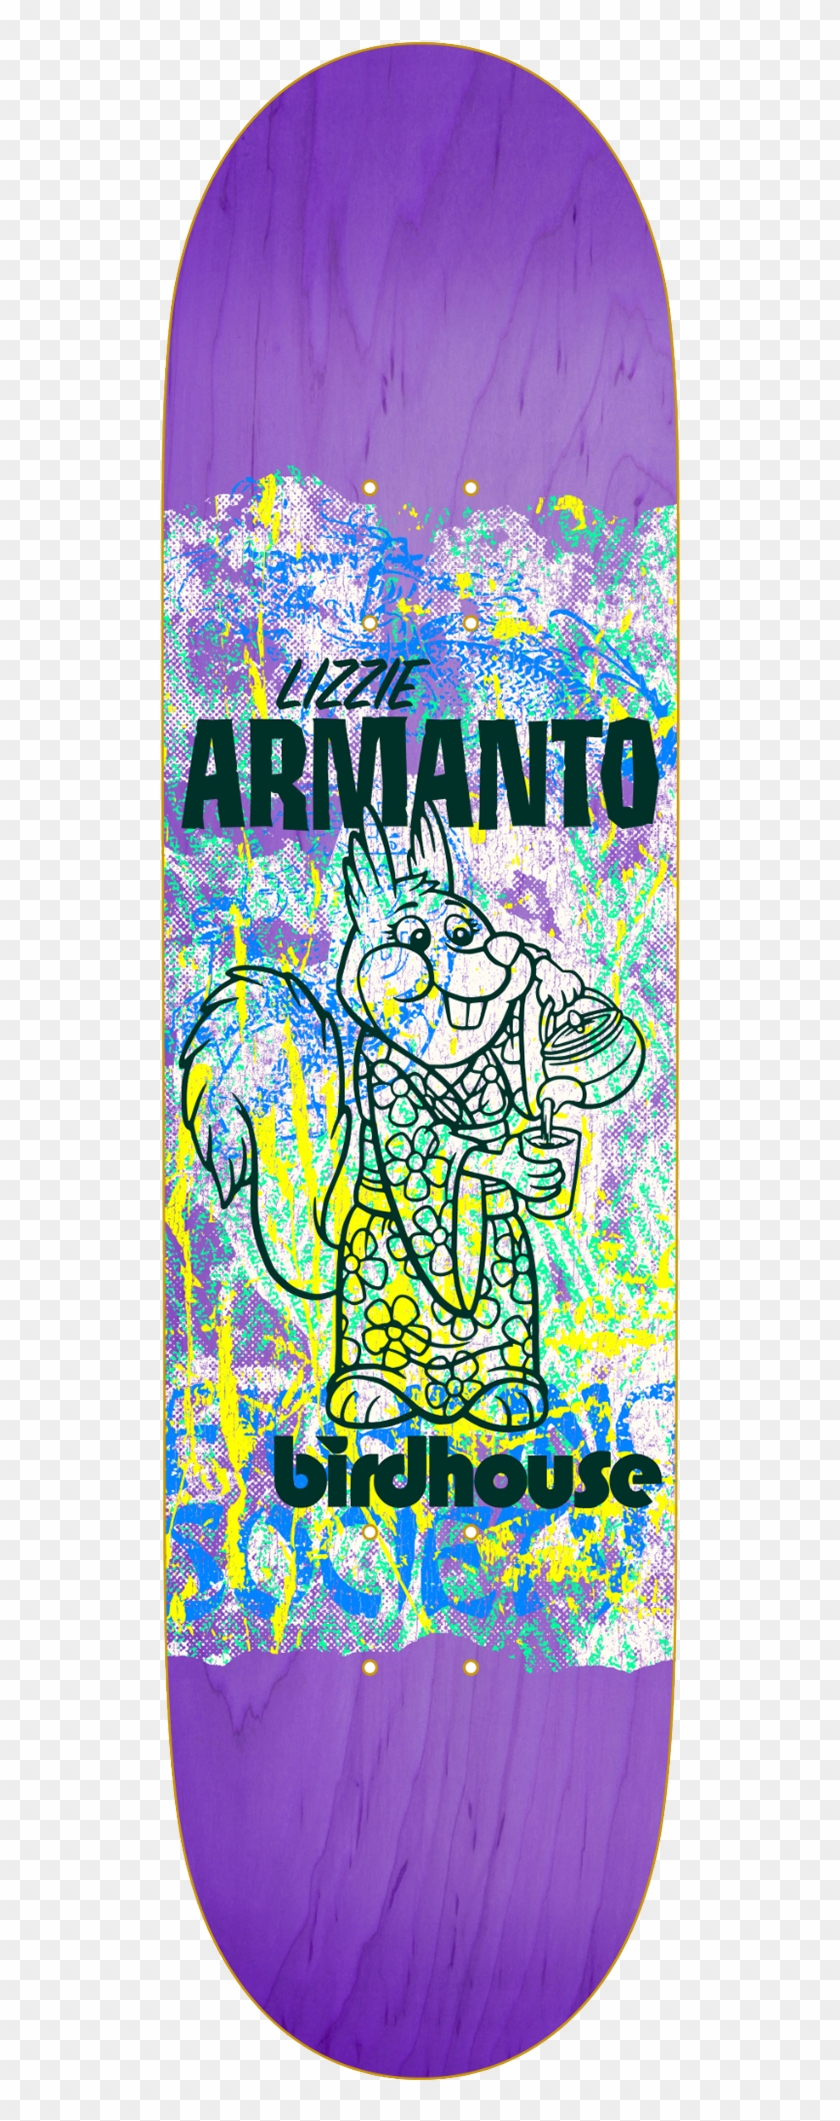 Lizzie Armanto Show Print - Lizzie Armanto #904172